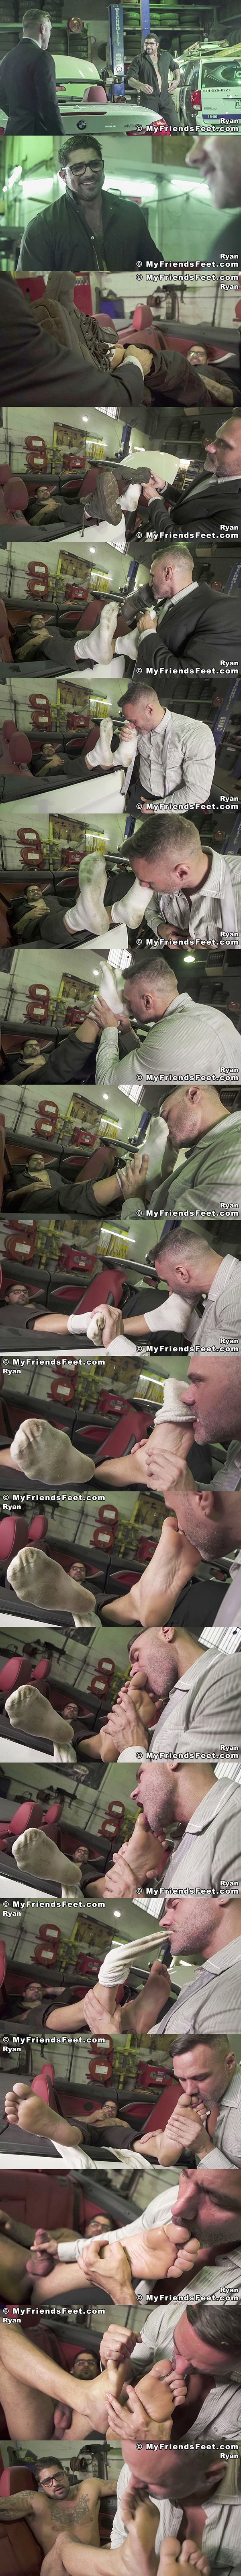 Myfriendsfeet - Mechanic Ryan Bones Worshiped 02